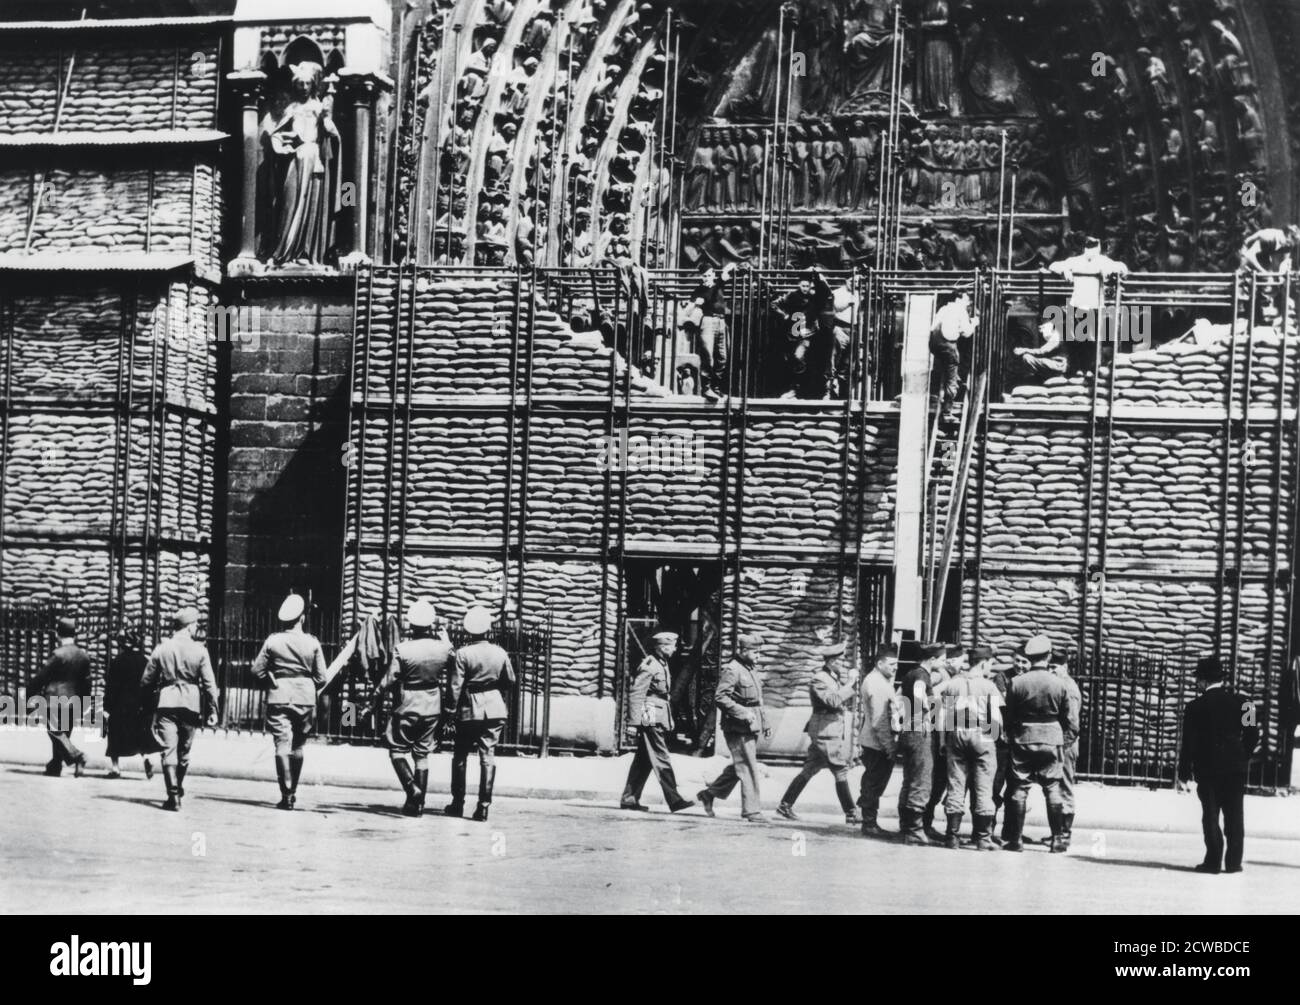 Reinigung des Sandsackschutzes von der Fassade von Notre Dame, deutsch-besetzte Paris, 1940. Paris überlebte die Nazi-Invasion relativ unbeschadet, nachdem die Regierung sie zu einer offenen Stadt erklärt und sie den Deutschen überlassen hatte. Der Fotograf ist unbekannt. Stockfoto